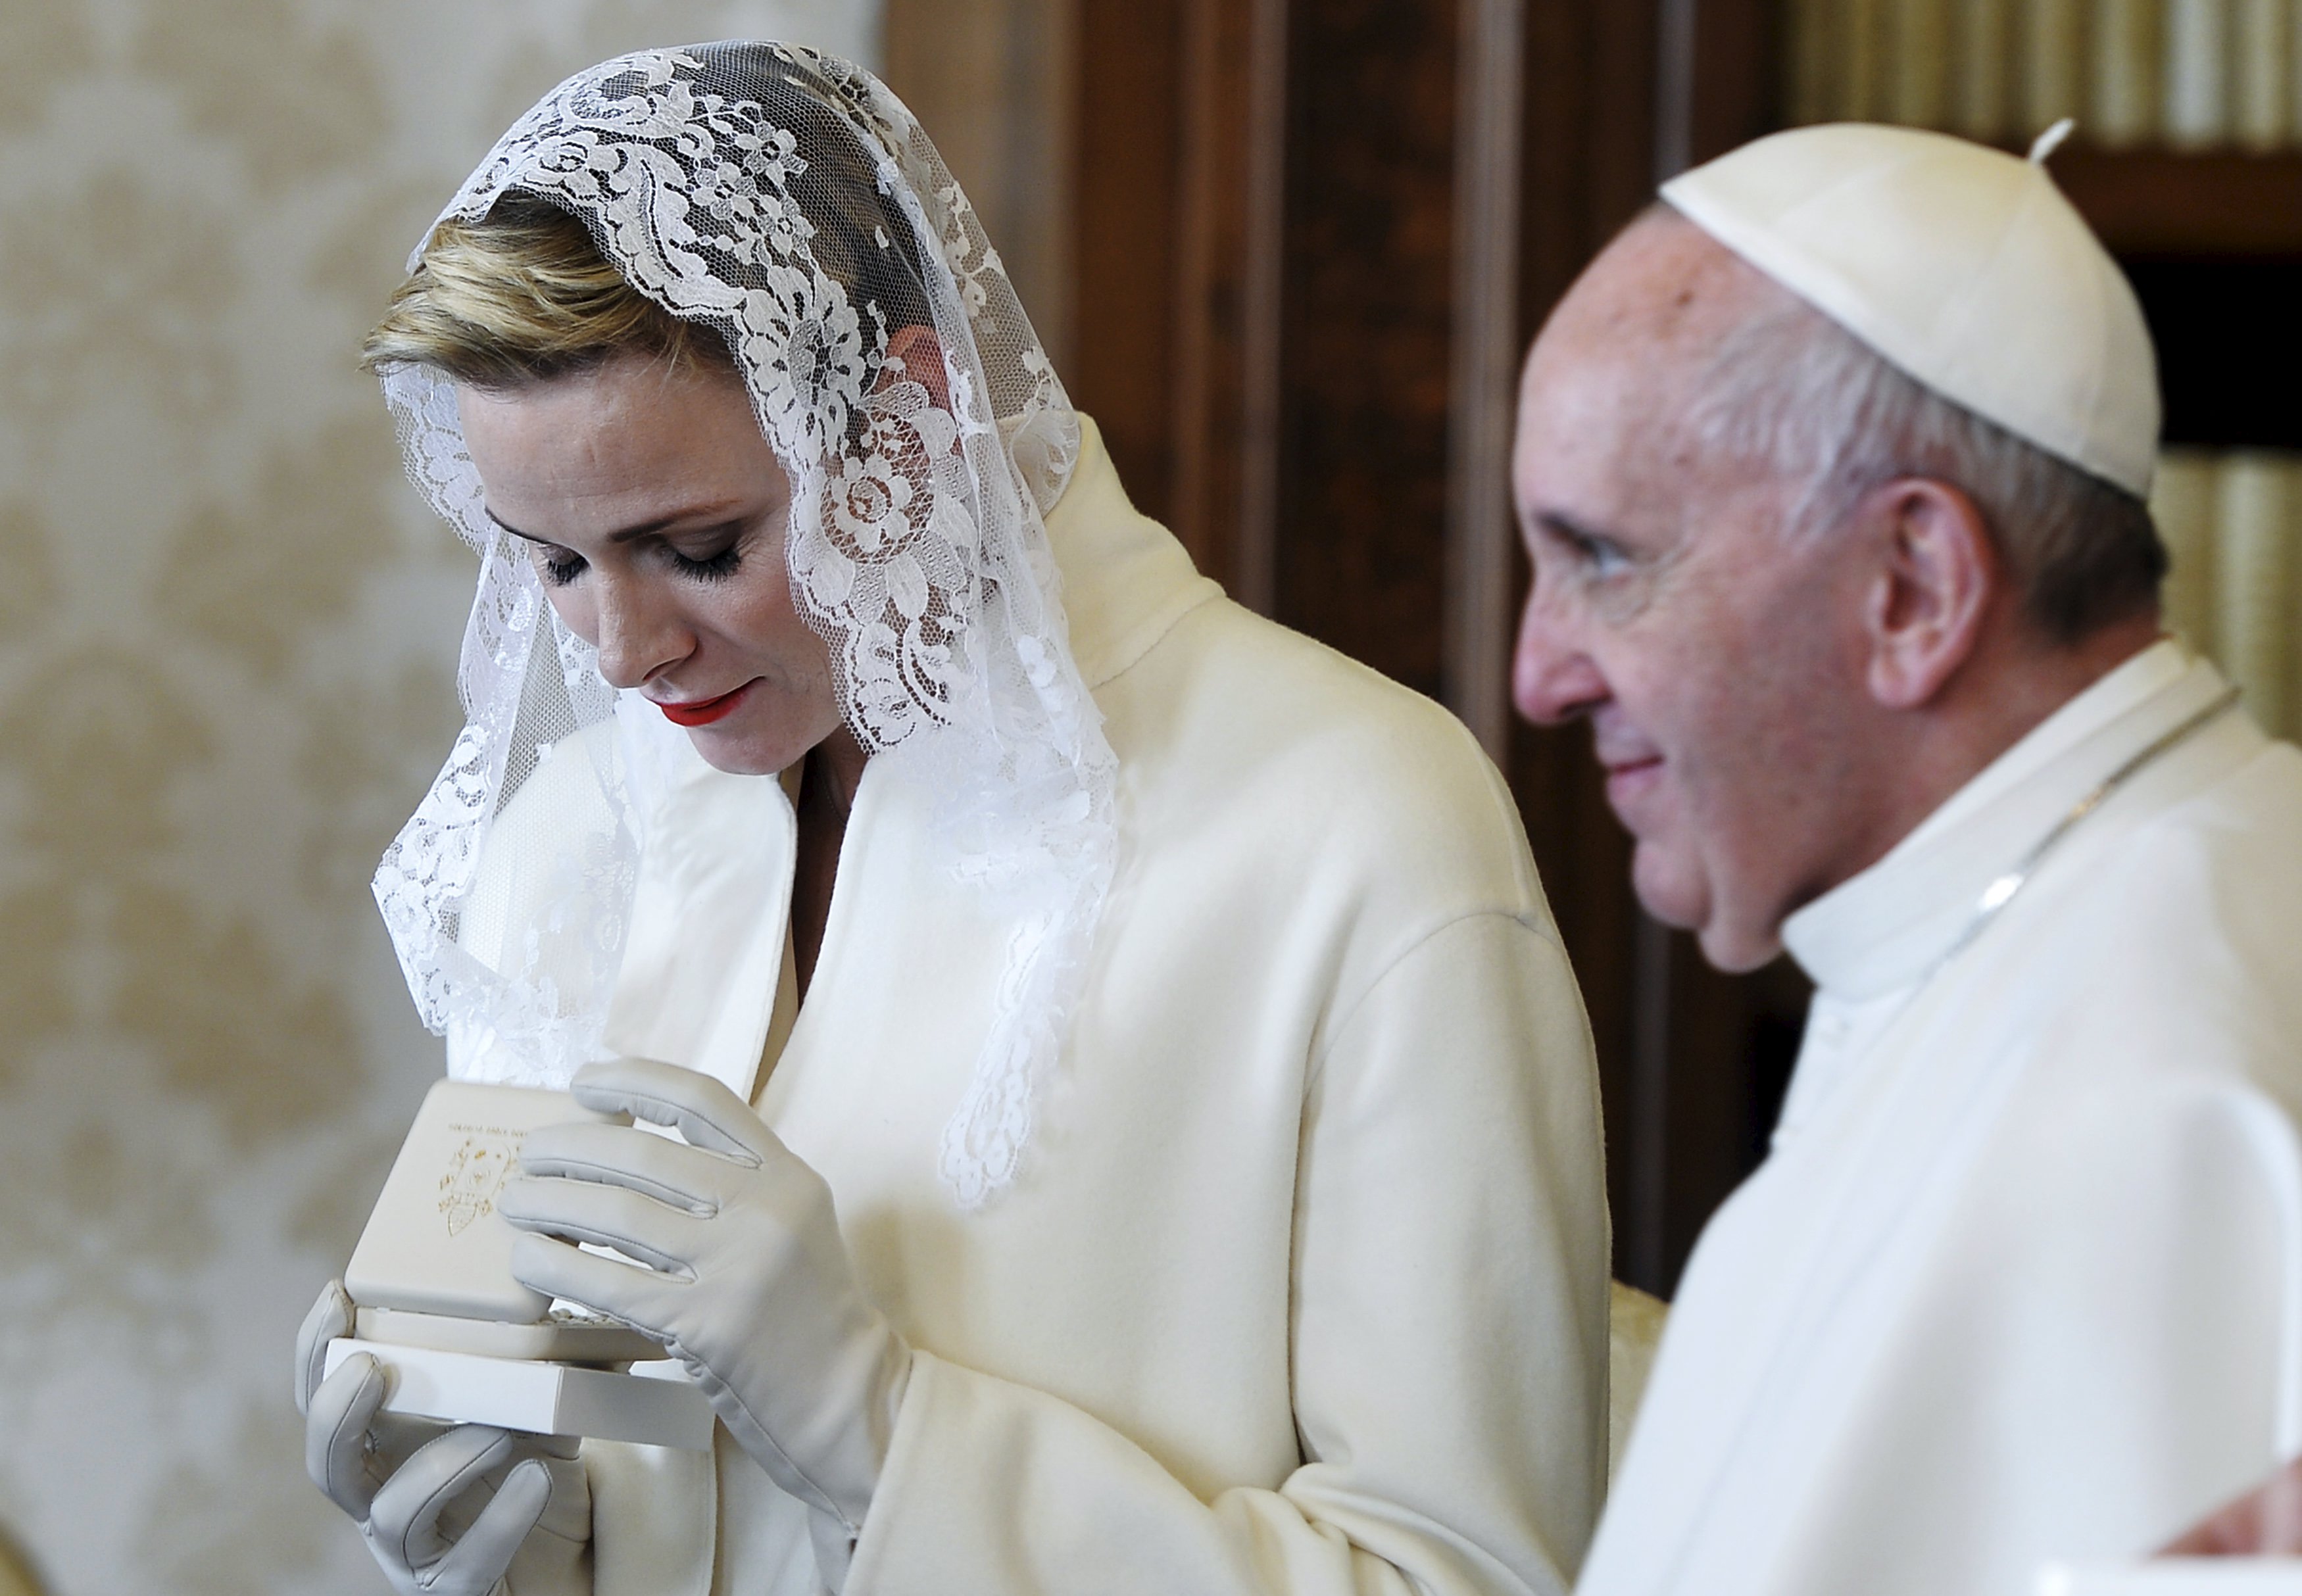 Ενώπιον του Πάπα: Μόνο επτά γυναίκες επιτρέπεται να φορέσουν λευκό πέπλο